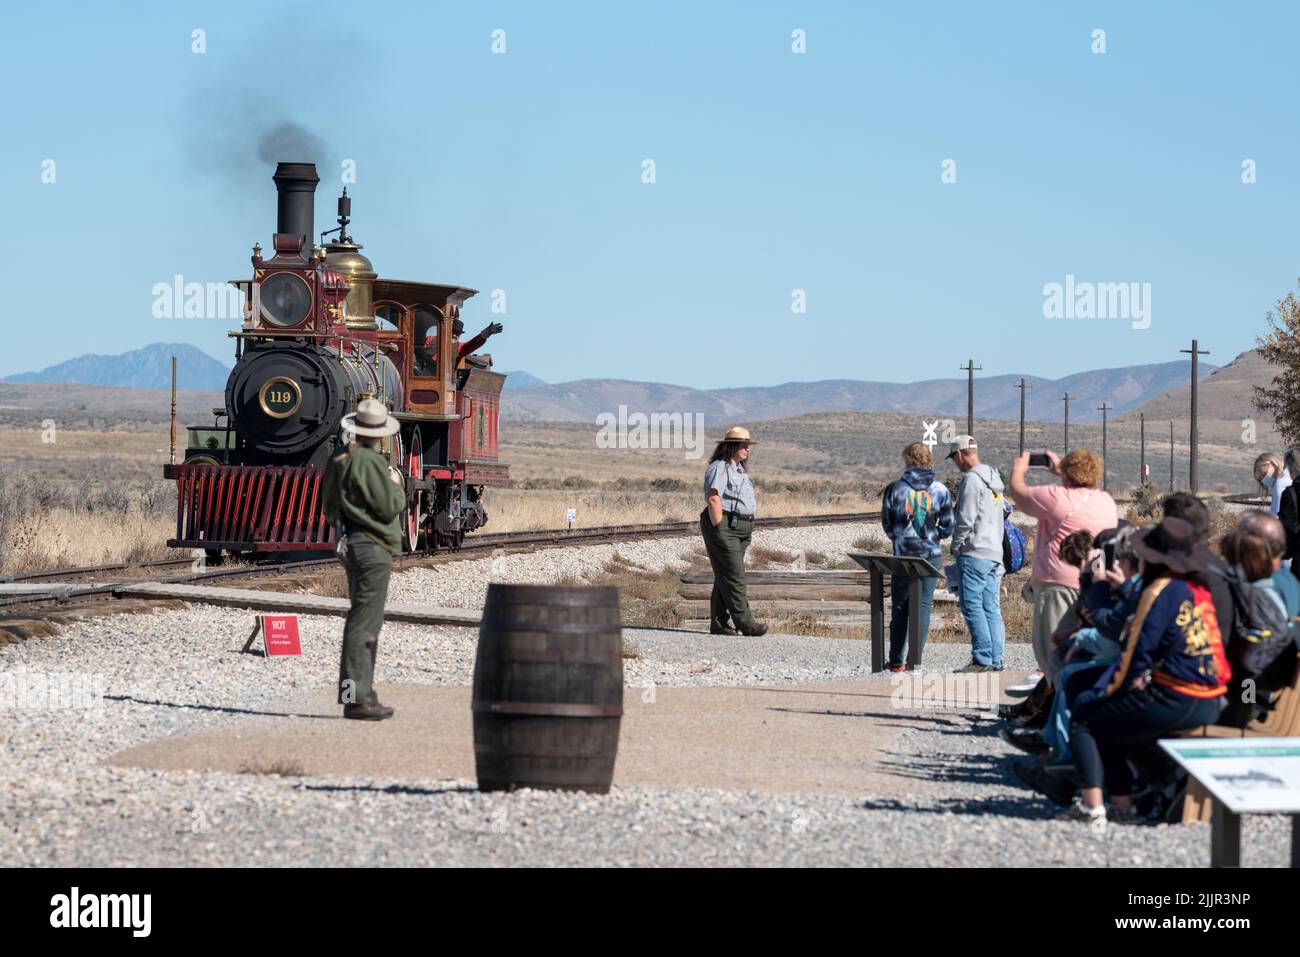 Demostración de locomotora 119, Parque Histórico Nacional Golden Spike, Utah. Foto de stock